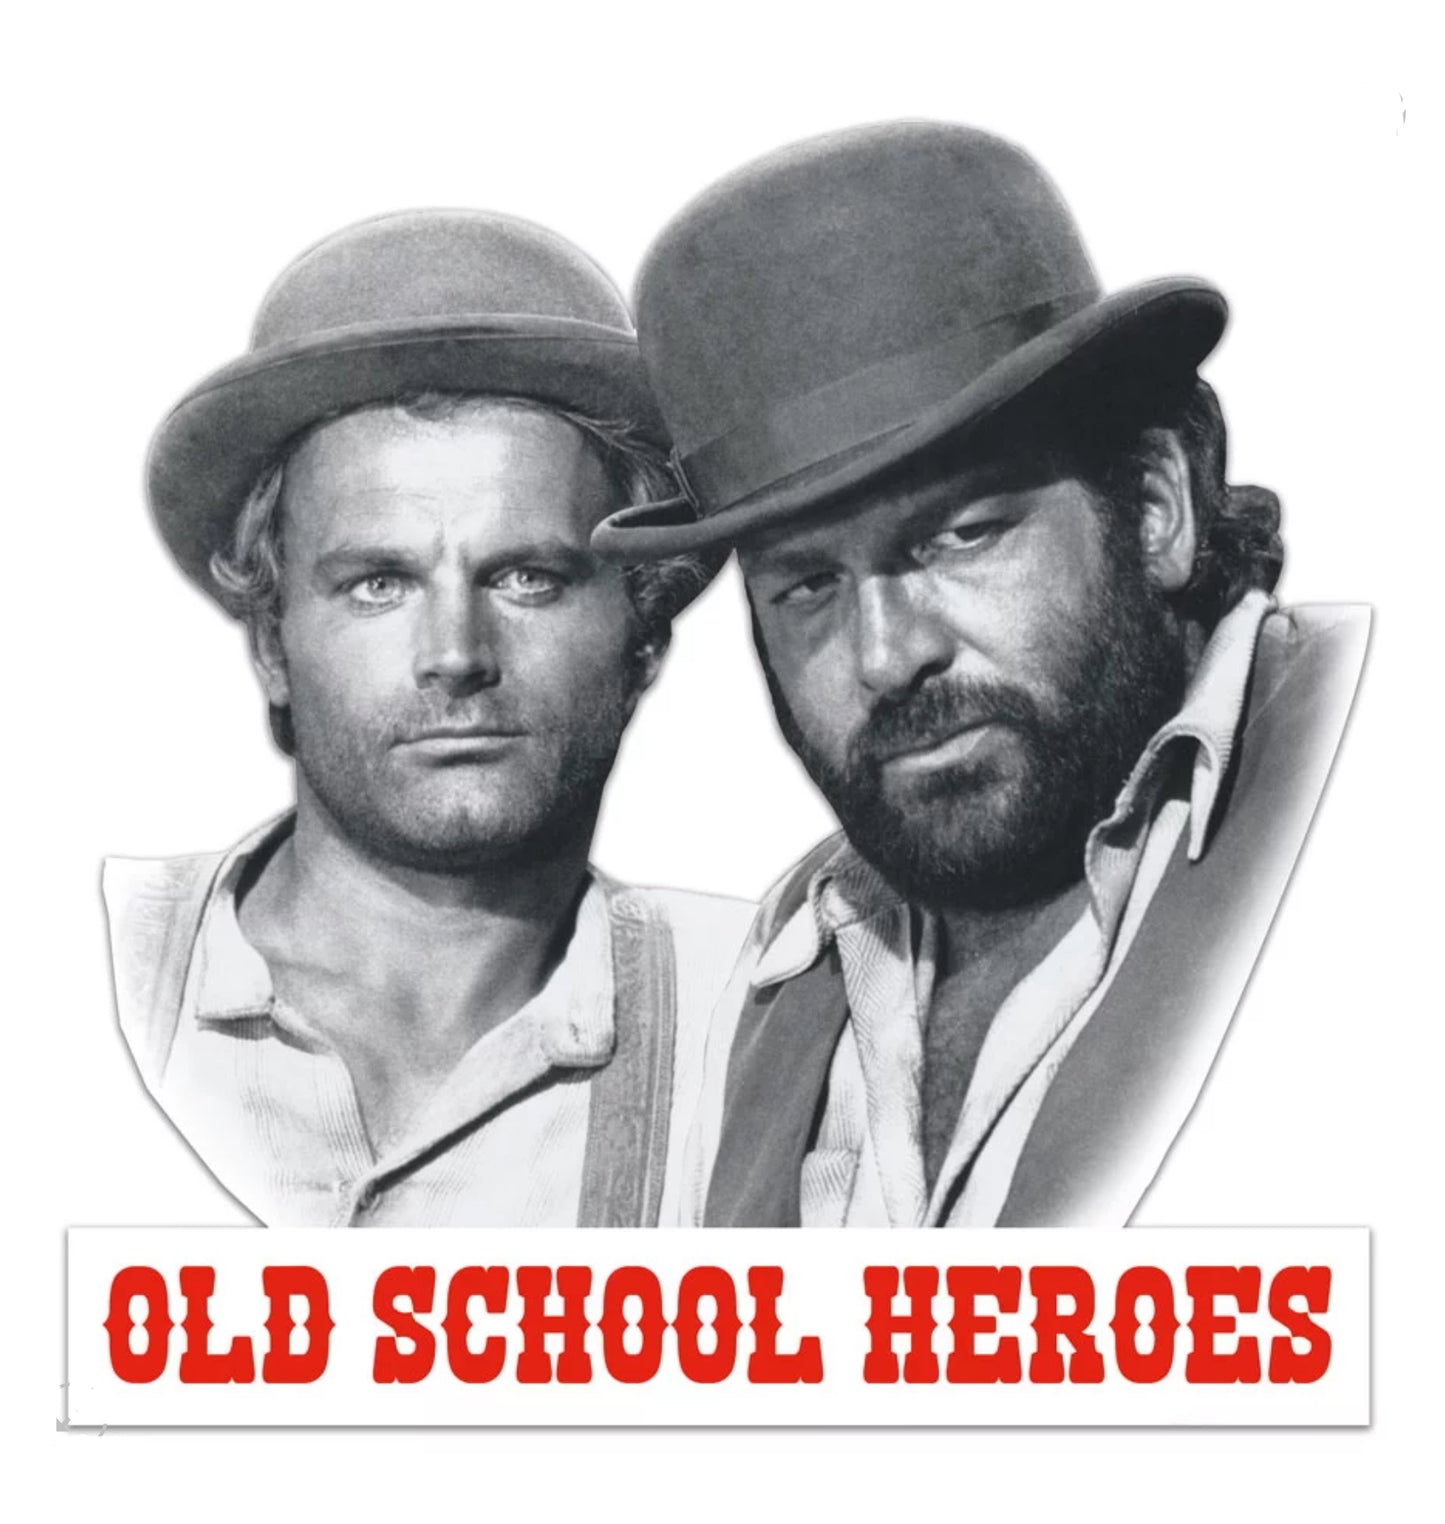 Blechschild "OLD SCHOOL HEROES"